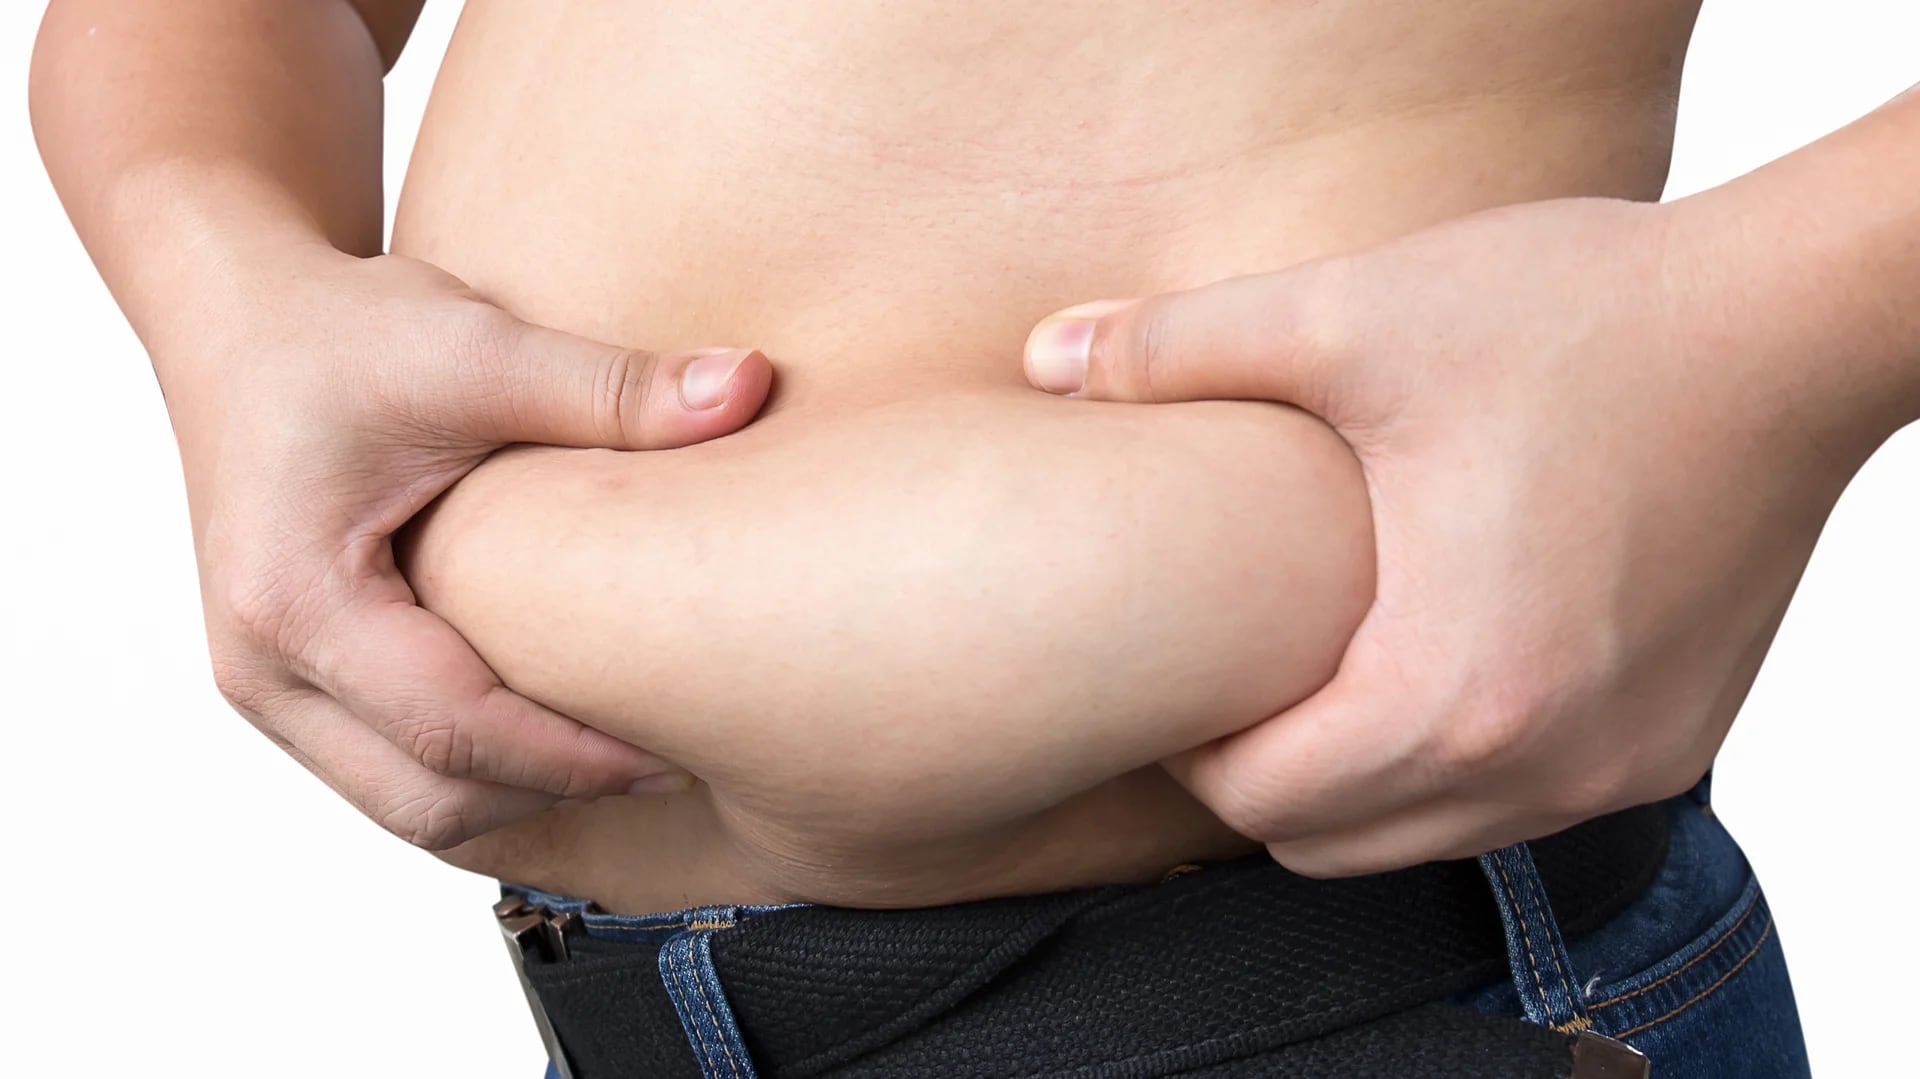 Loa obesos sanos en realidad no existen, ya que padecen más riesgo de enfermedades (iStock)